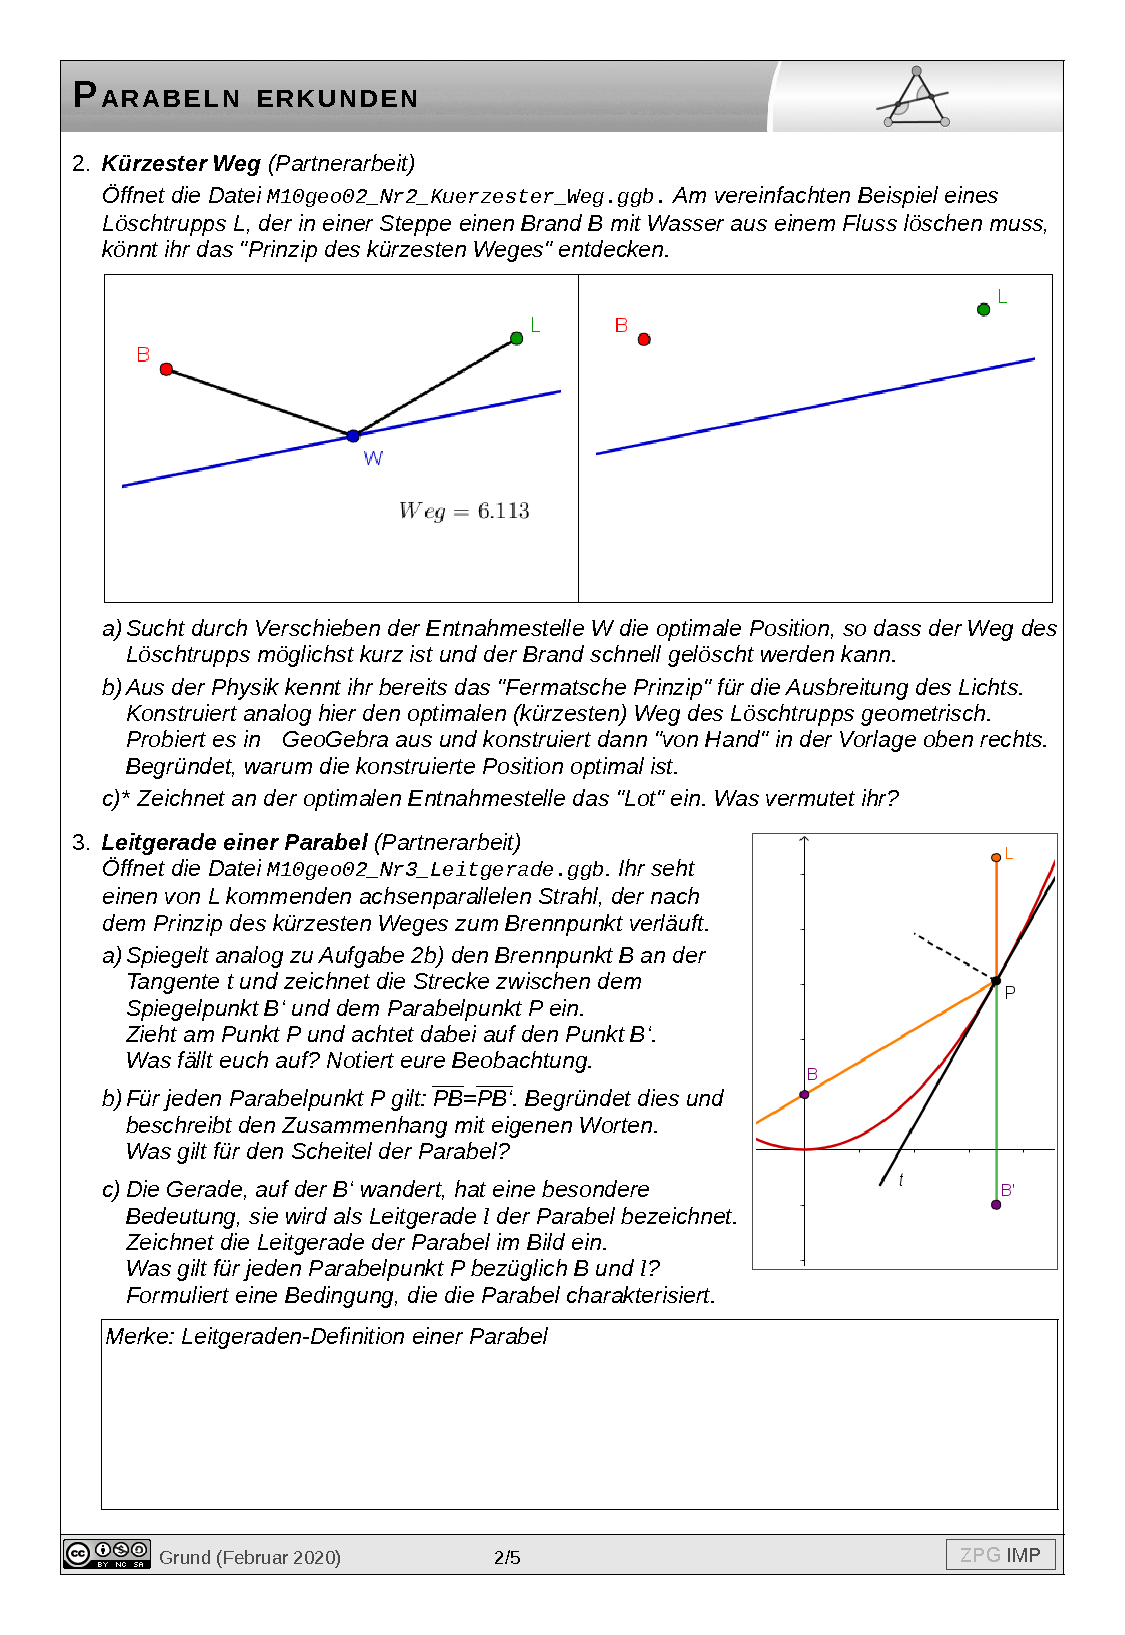 Parabel erkunden: Lösung, Seite 2